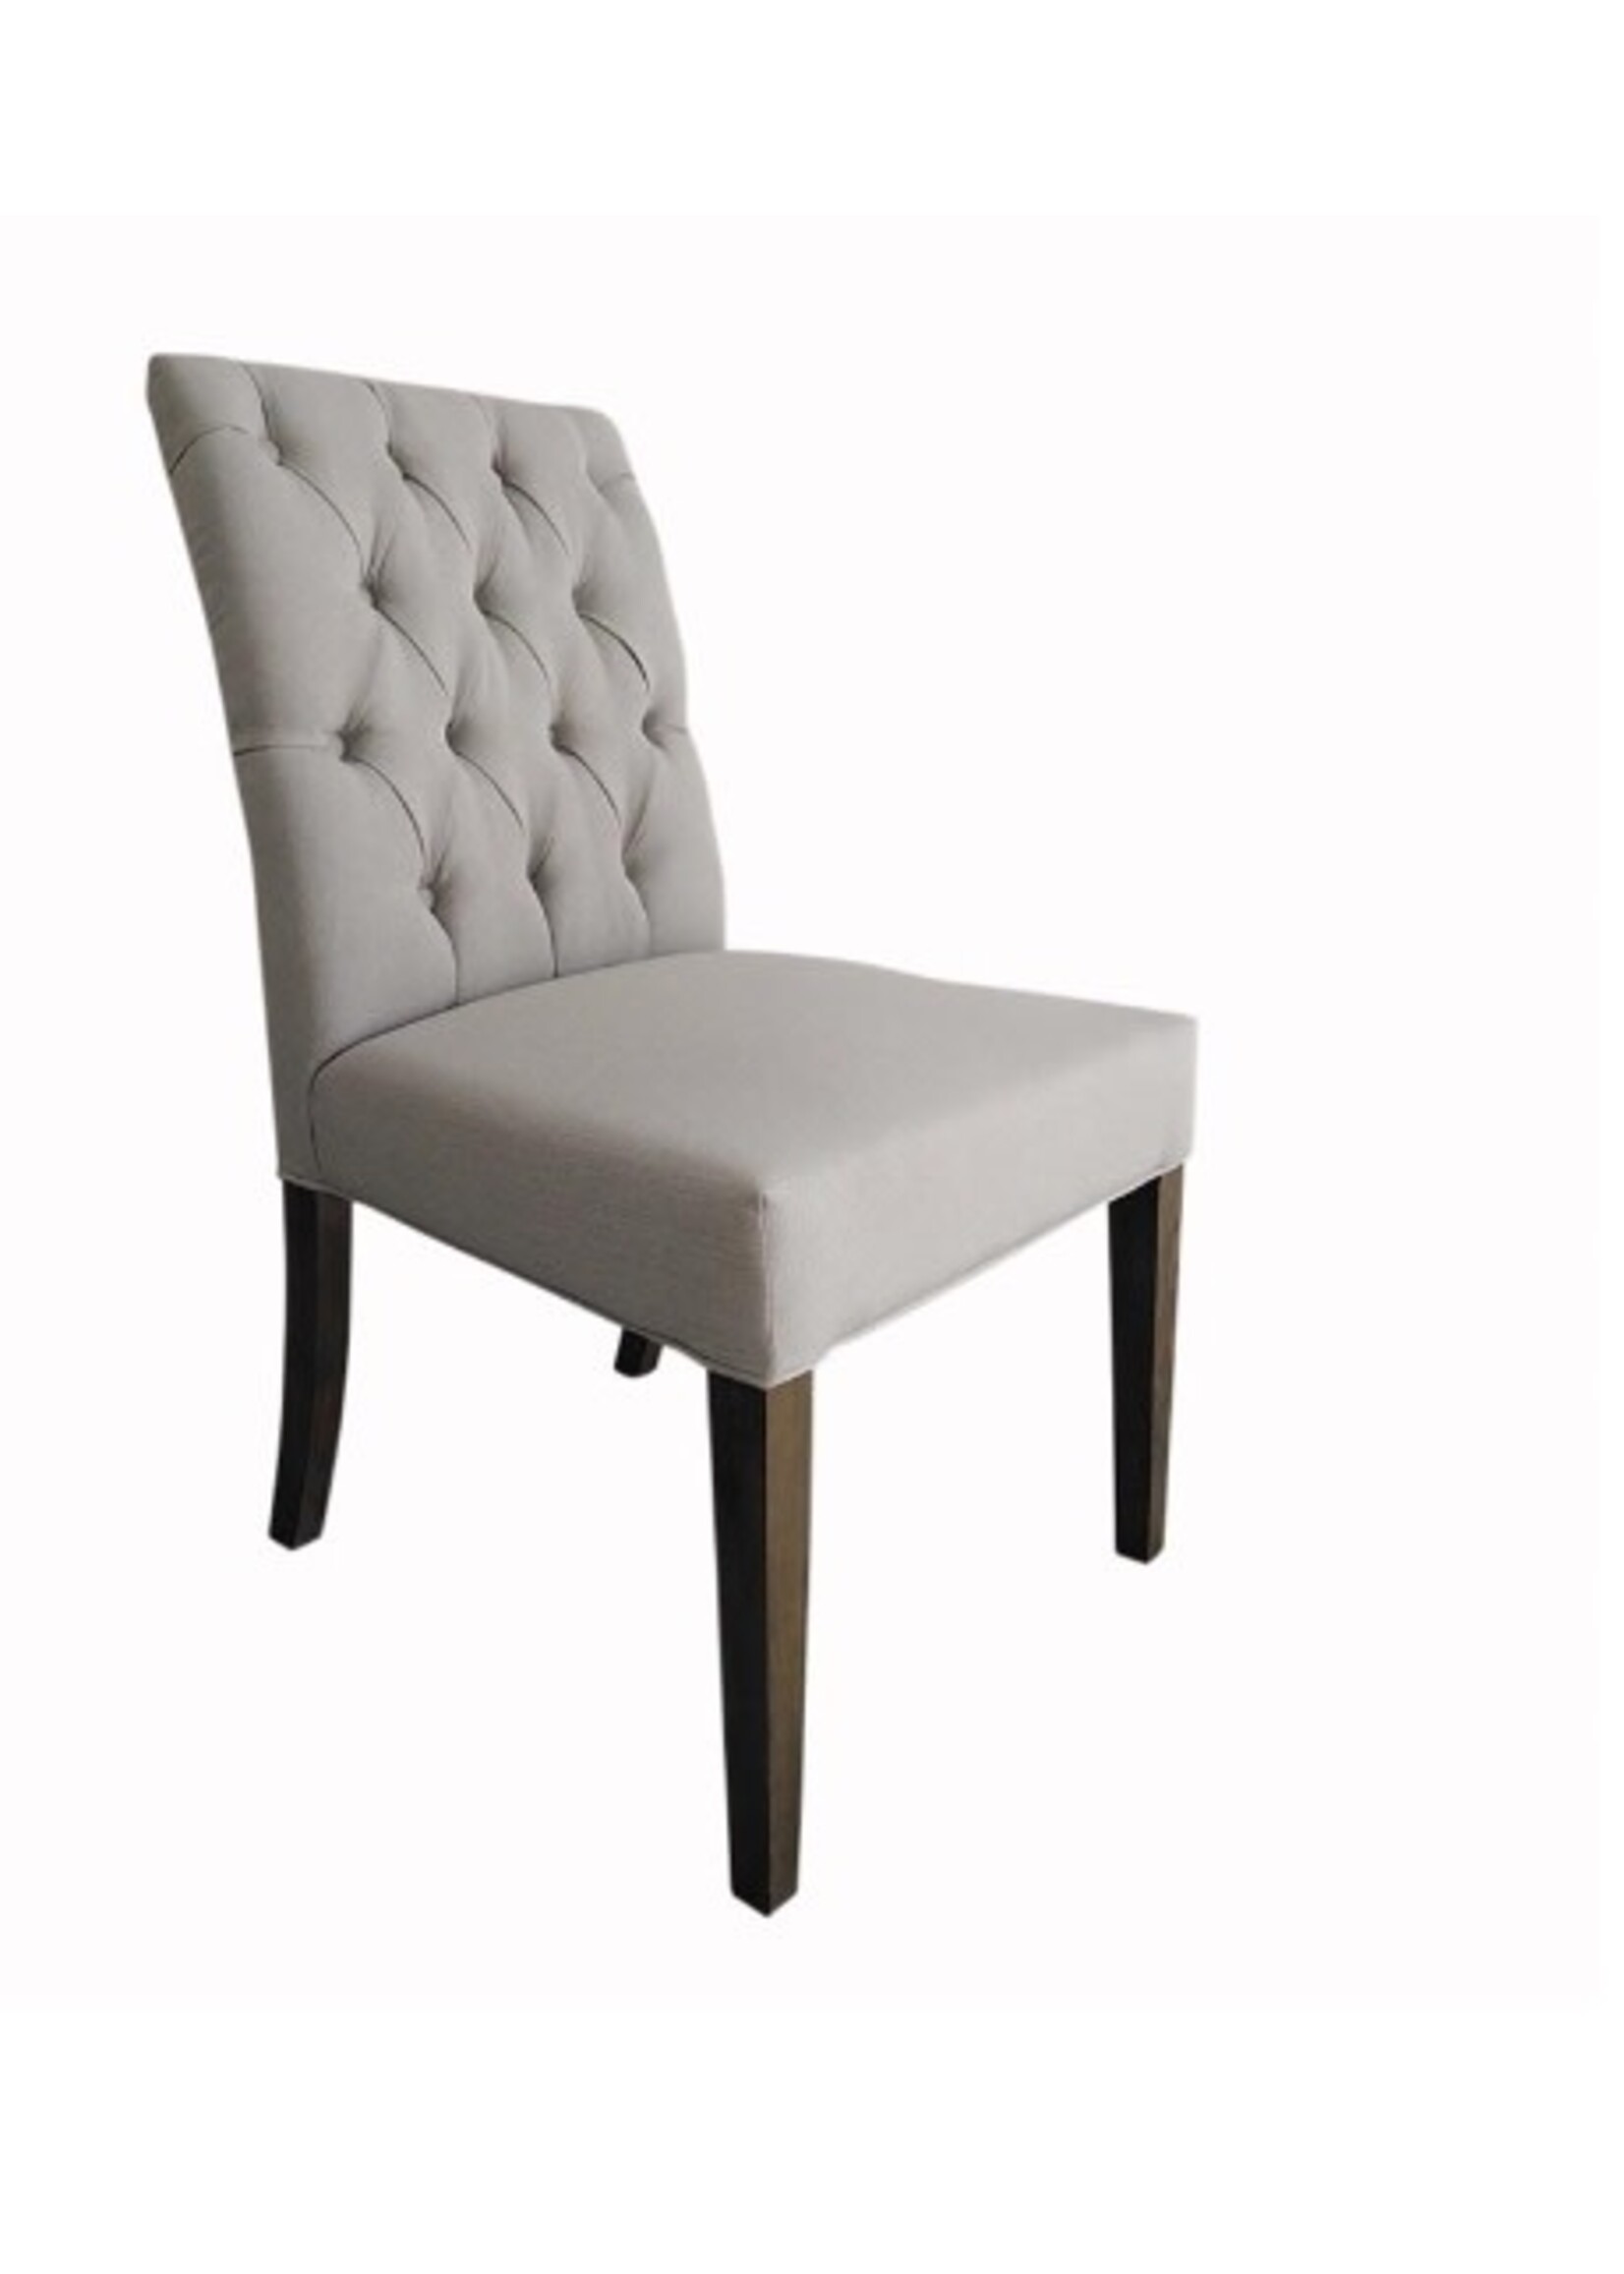 Sarah Side Chair 22” W x 27.5”D x 38.5”H